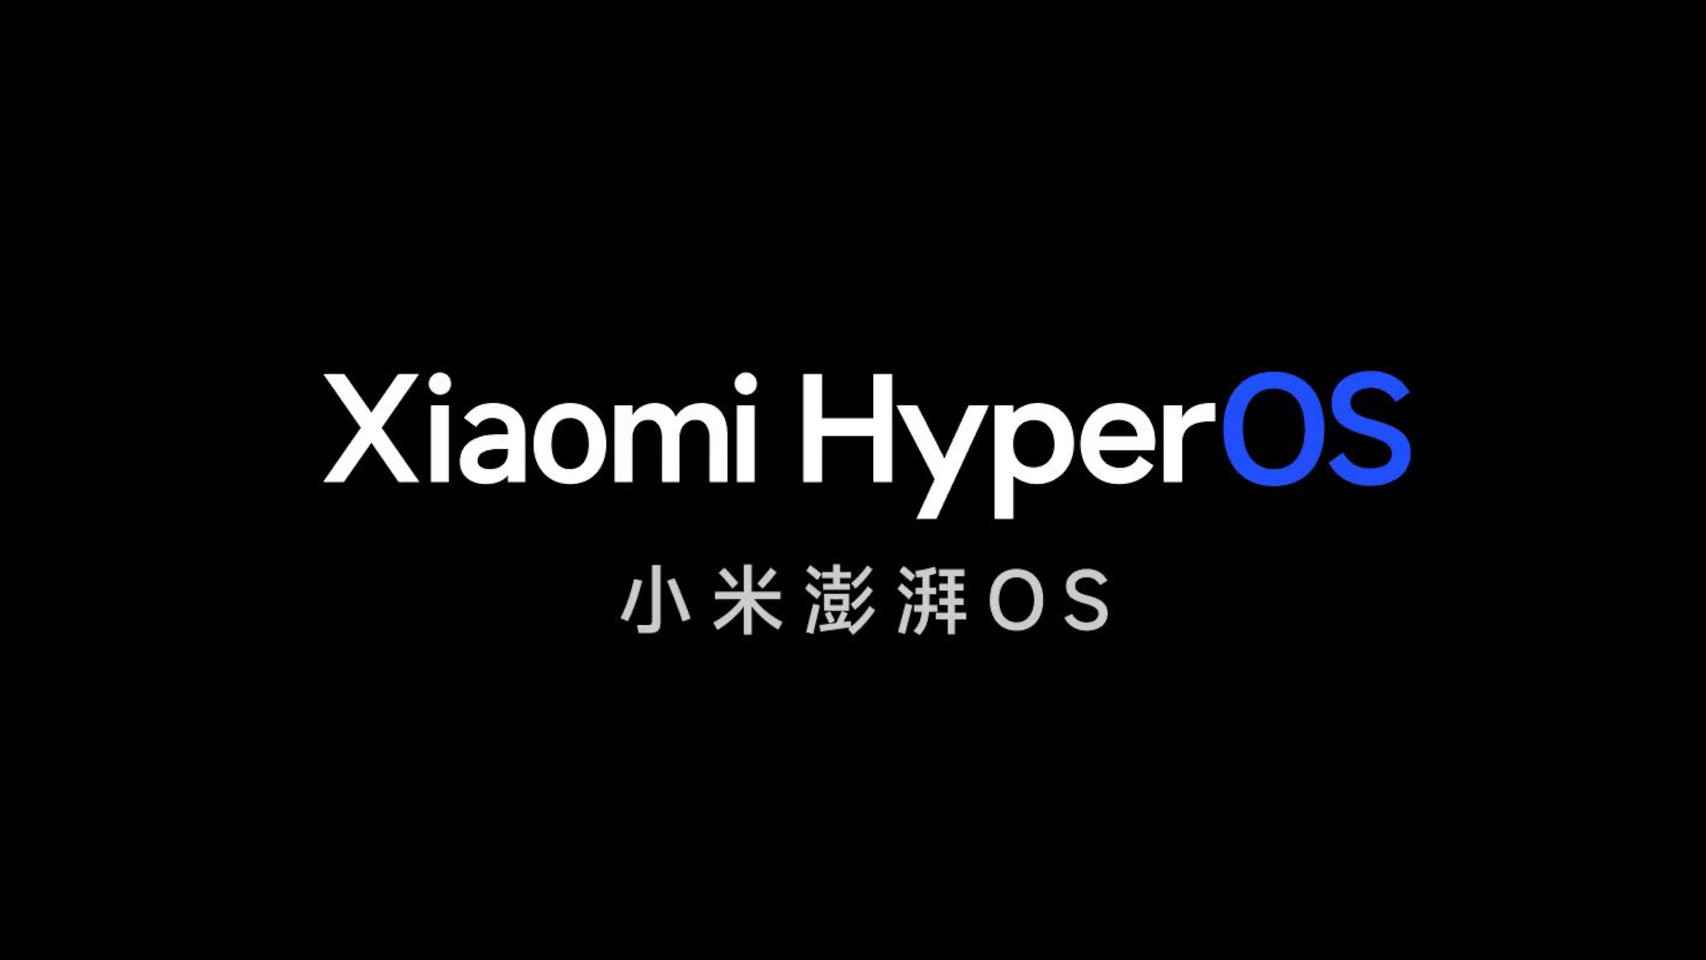 Logotipo de Xiaomi HyperOS en negro